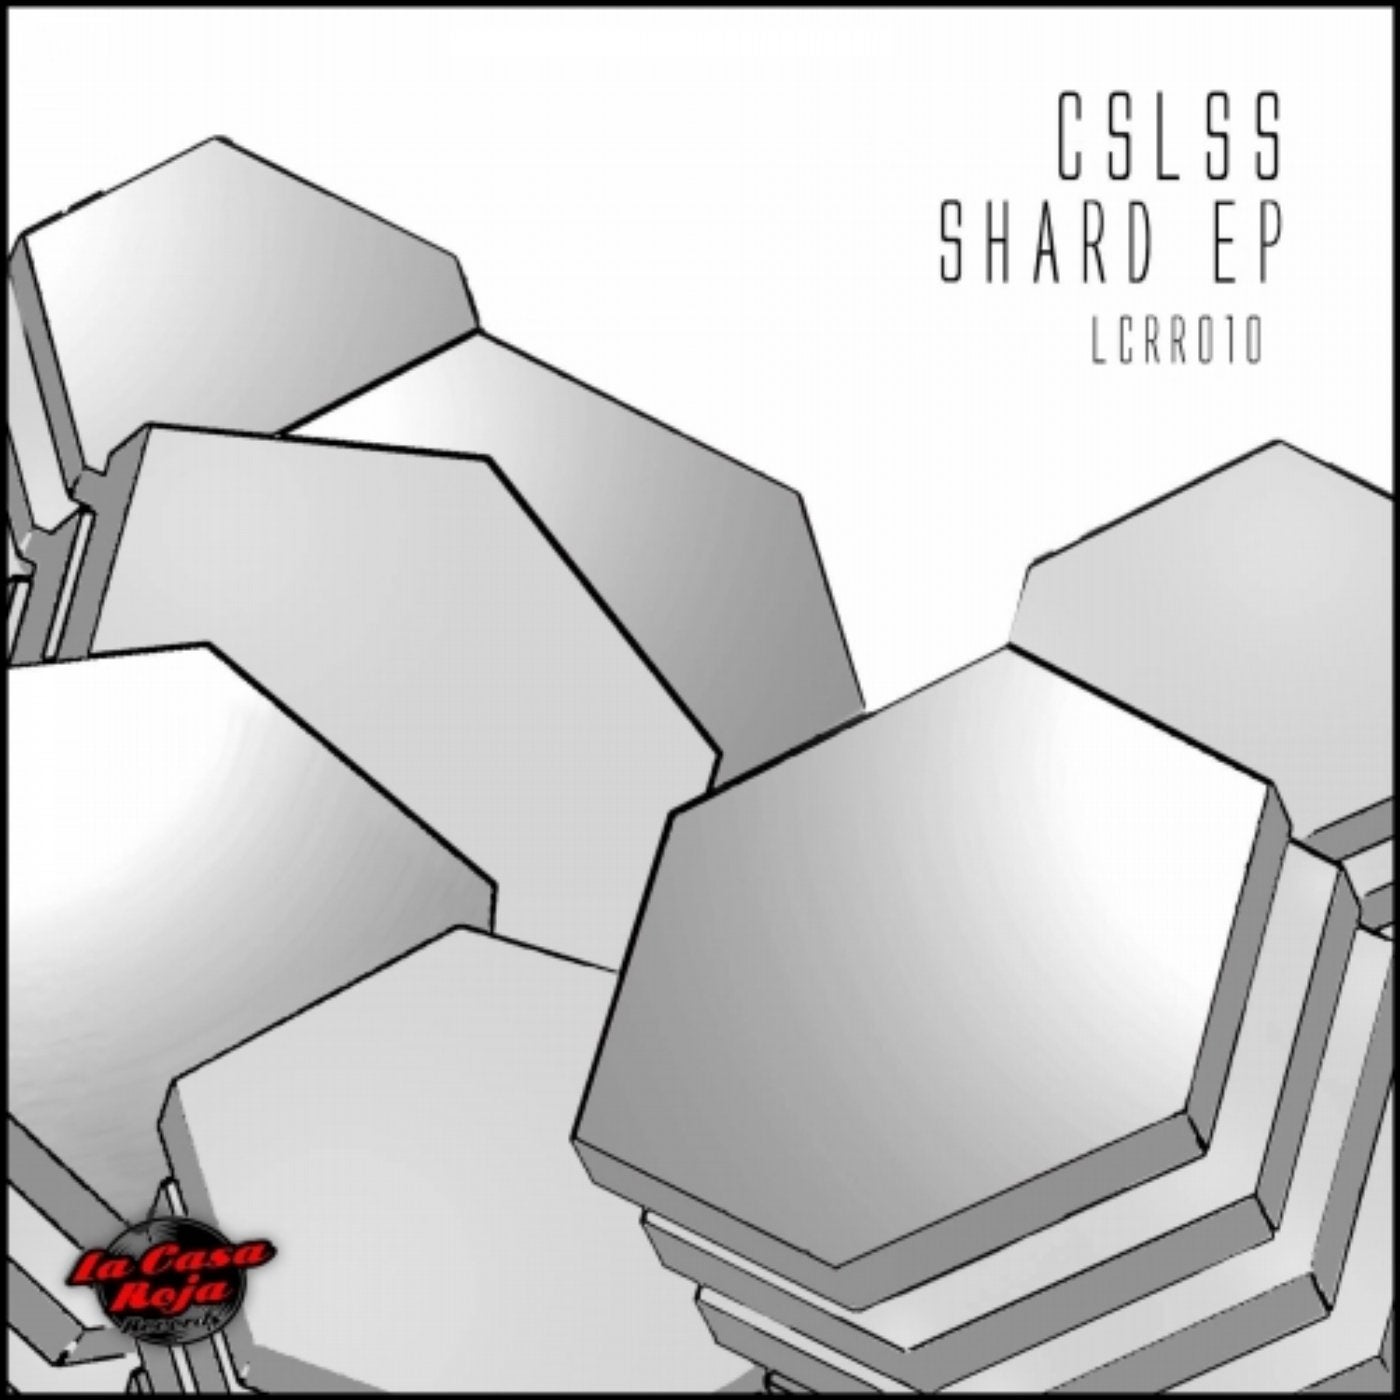 Shard EP